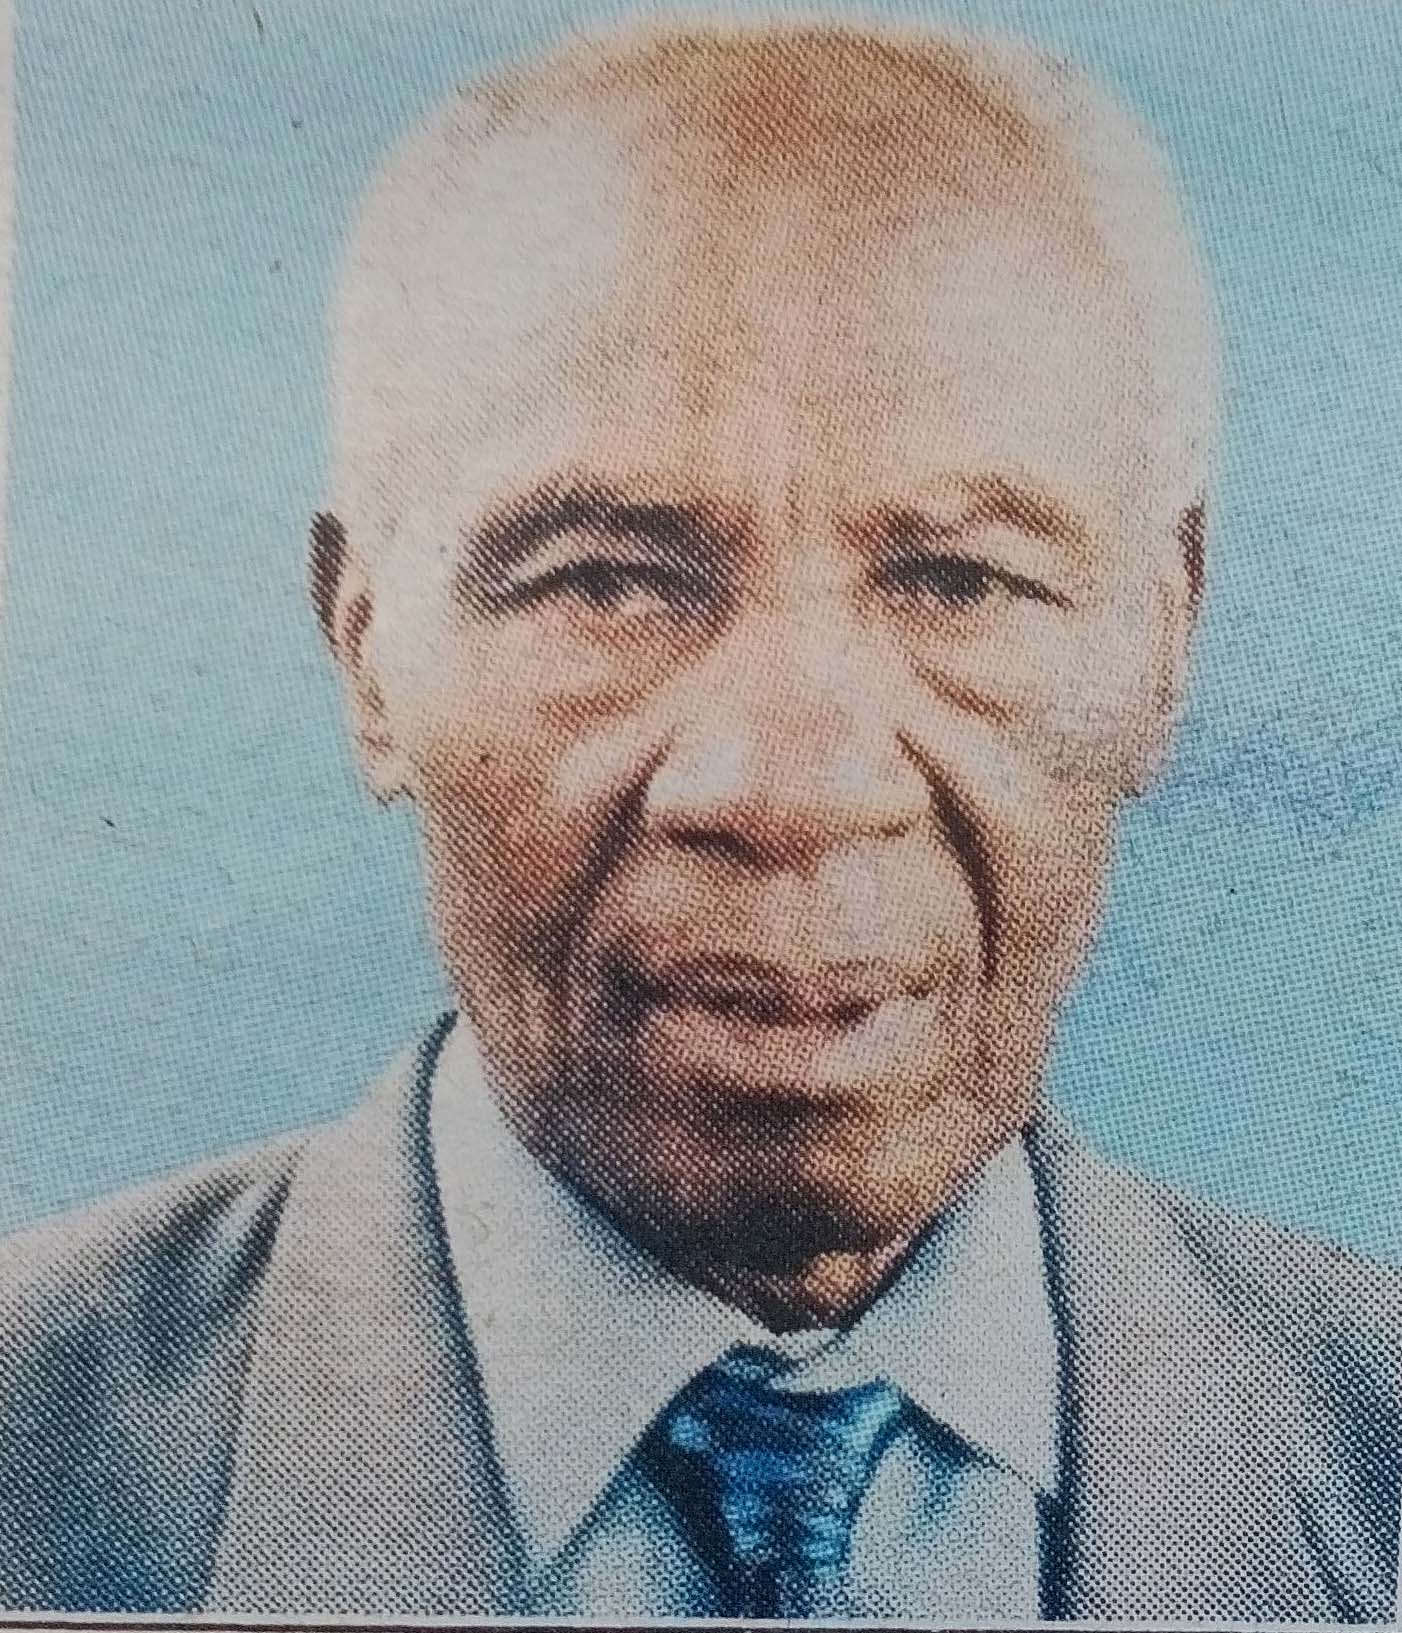 Obituary Image of Stanley Gicheha Muturi